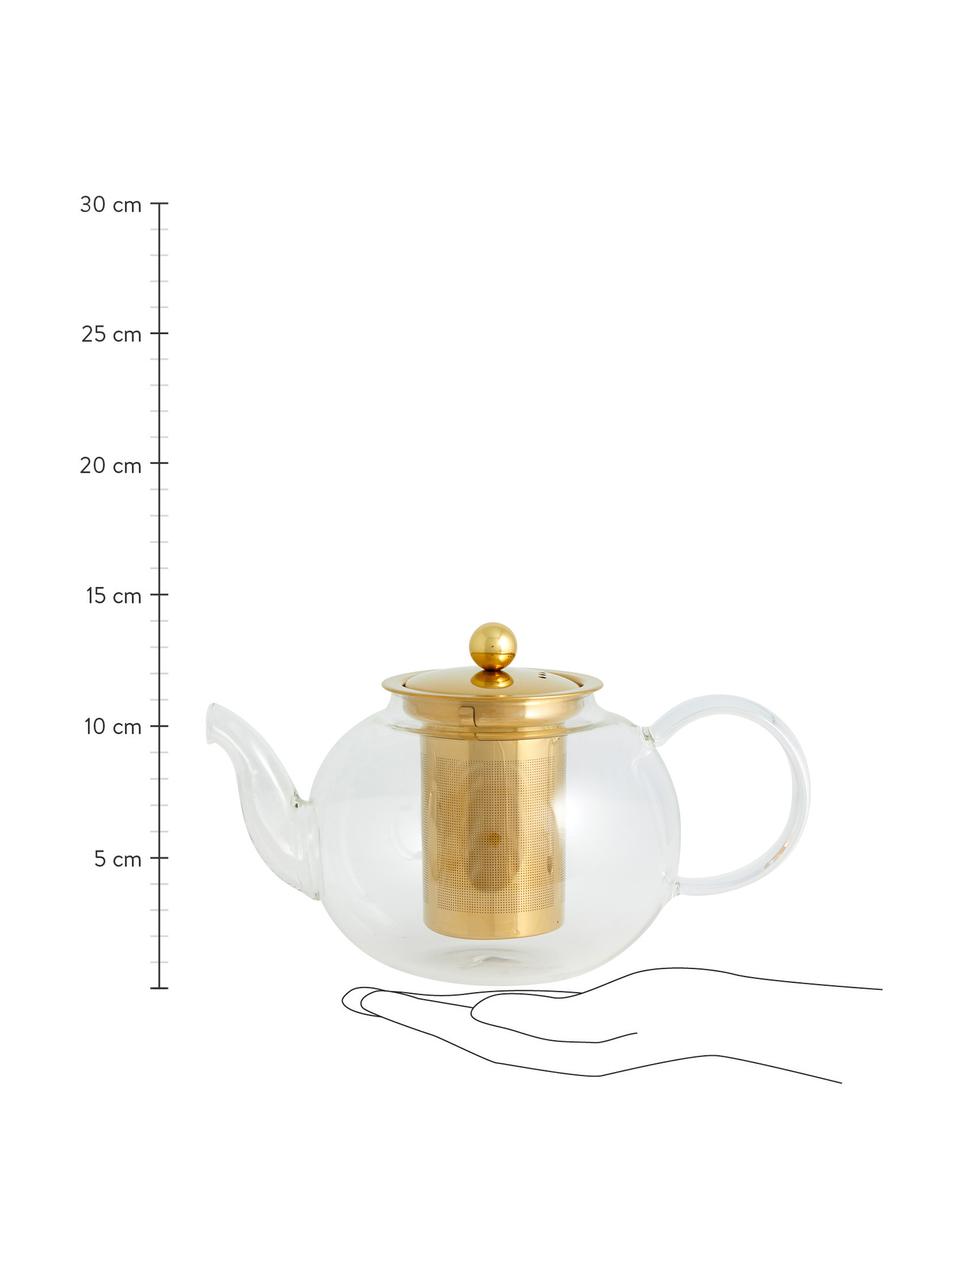 Dzbanek do herbaty ze szkła Chili, 1 l, Transparentny, odcienie złotego, 1 l